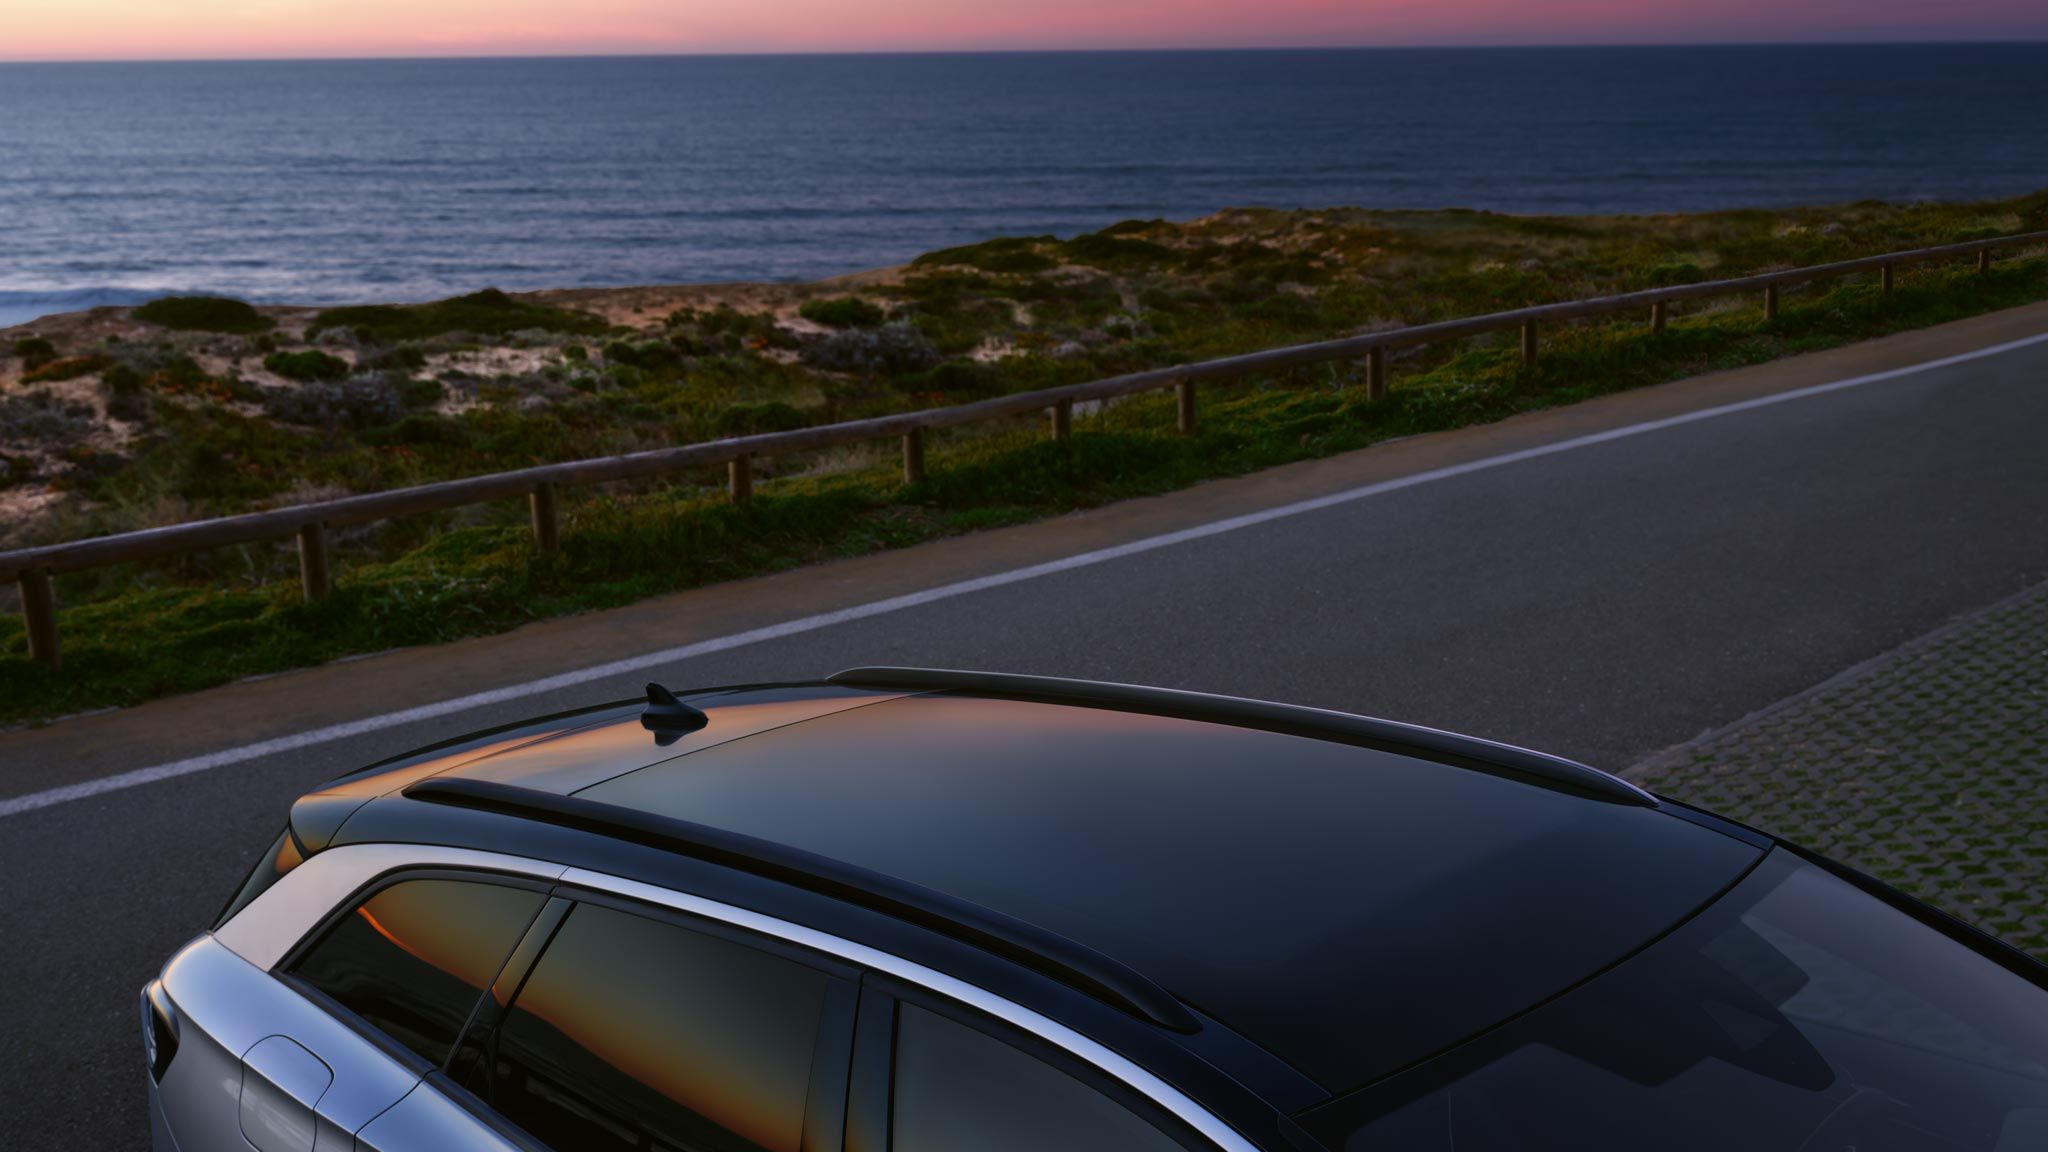 Das Panoramadach des VW ID.7 Tourer aus der Vogelperspektive, im Hintergrund sieht man das Meer